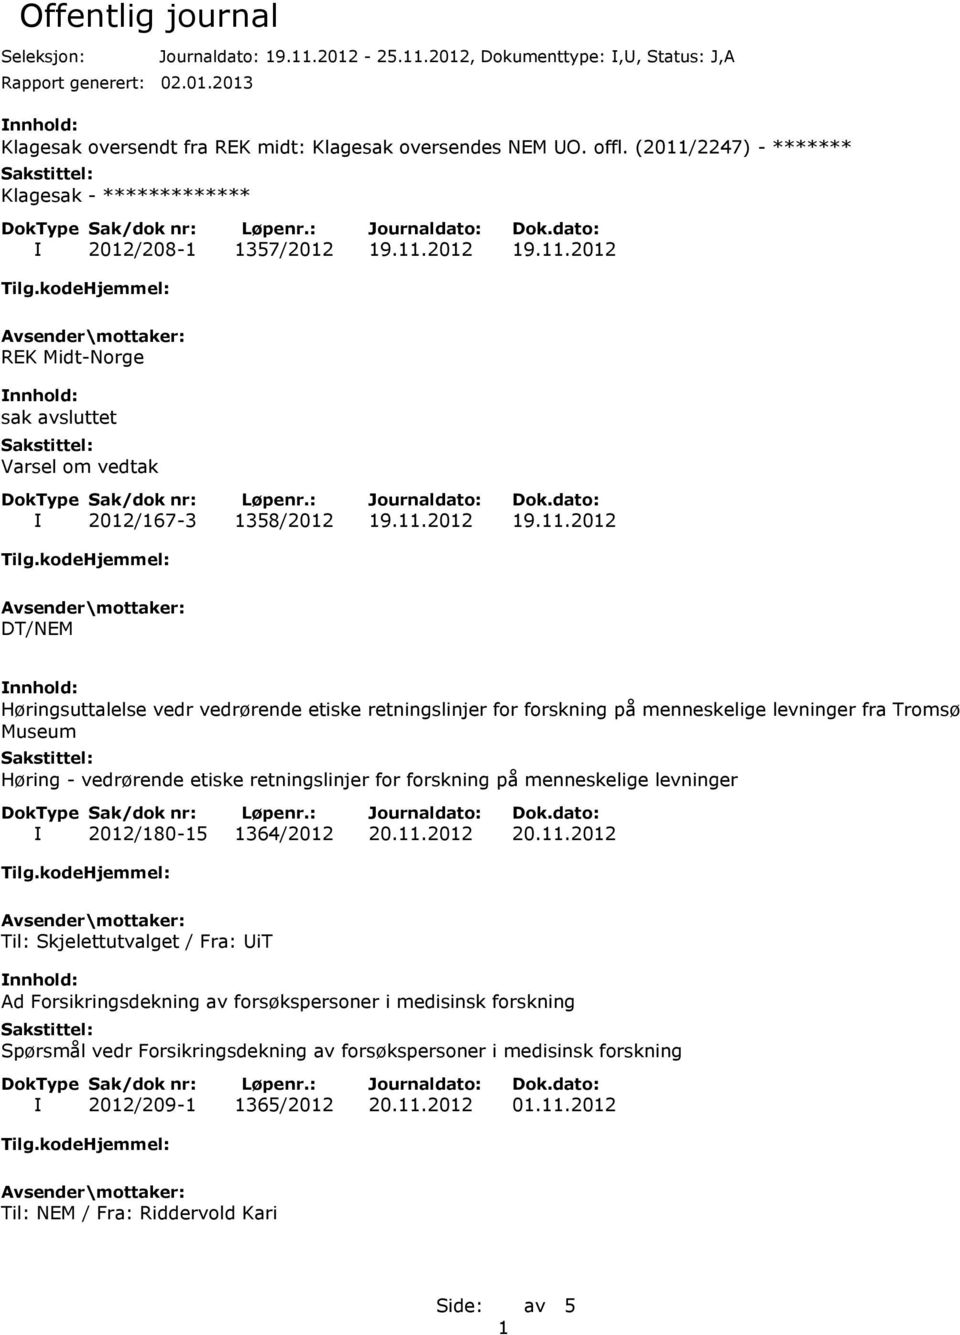 11.2012 20.11.2012 Til: Skjelettutvalget / Fra: UiT Ad Forsikringsdekning av forsøkspersoner i medisinsk forskning Spørsmål vedr Forsikringsdekning av forsøkspersoner i medisinsk forskning I